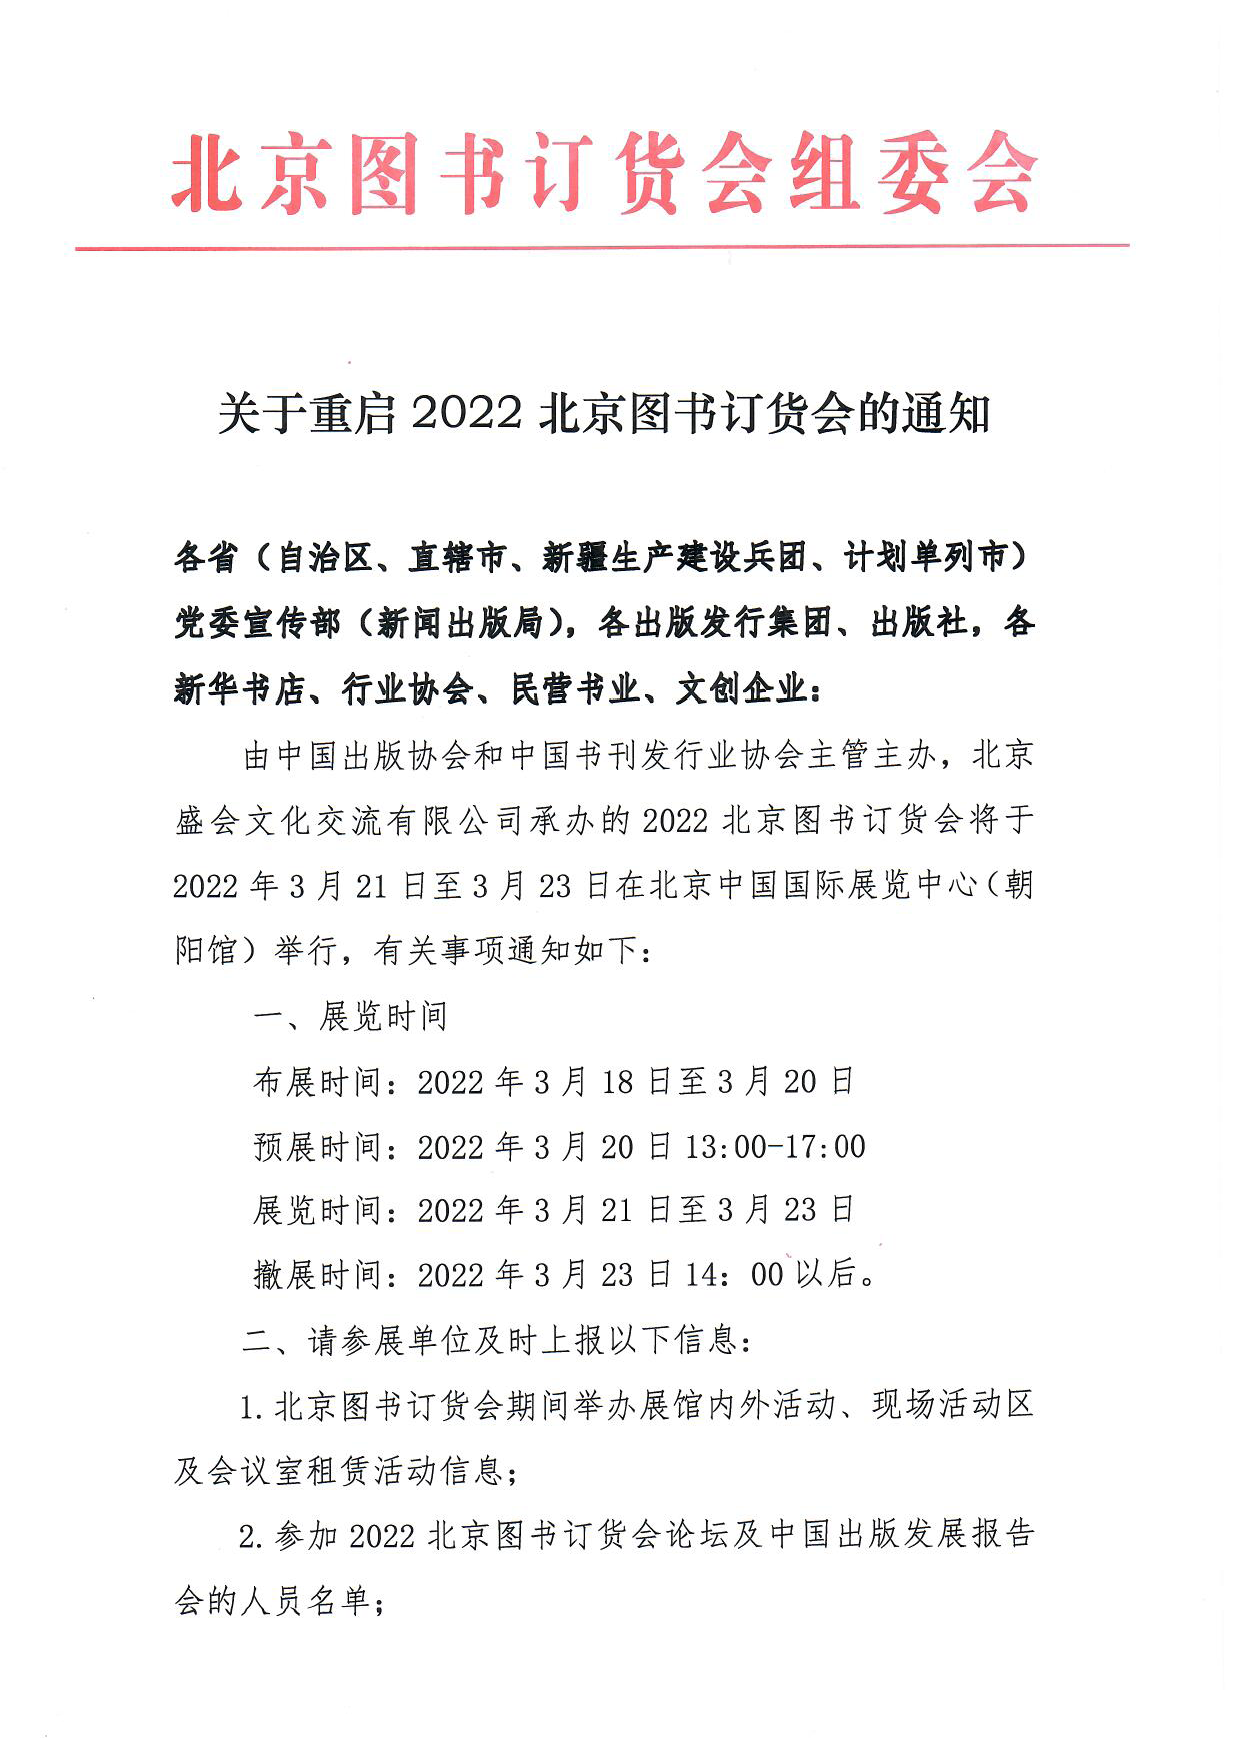 关于重启2022北京图书订货会的通知(1)(1)_页面_1.png